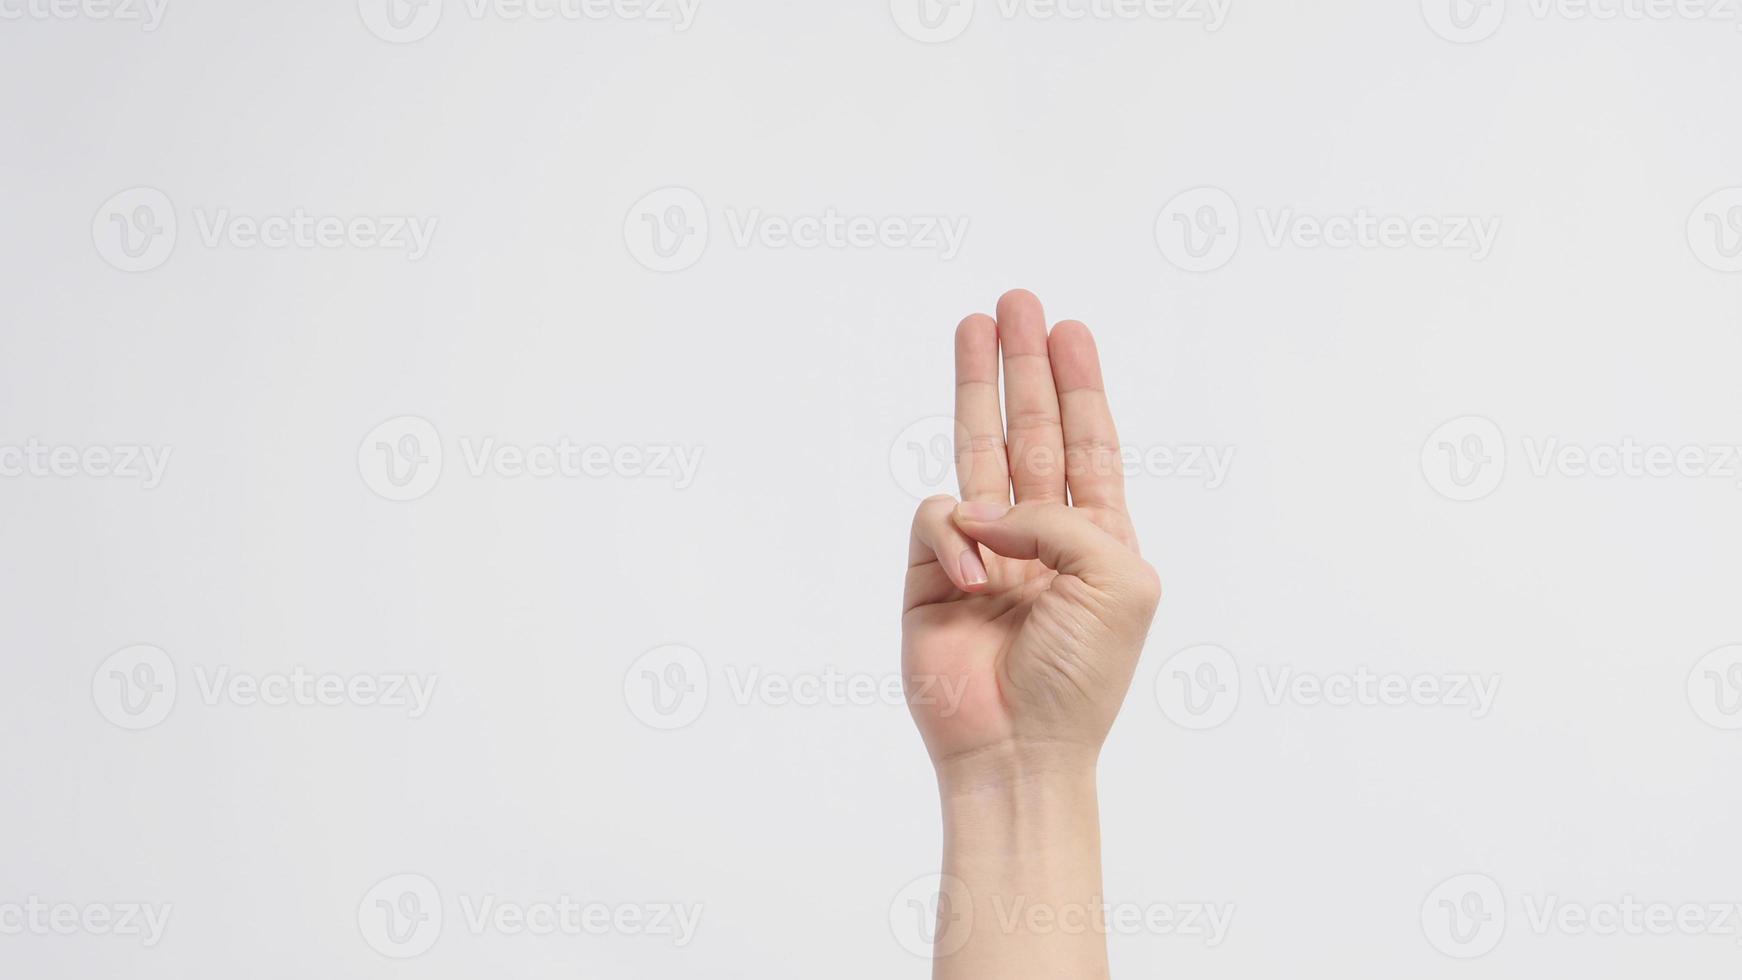 um sinal de mão de 3 dedos aponta para cima, significando três, terceiro ou use em protesto. Ele é colocado em um fundo branco. foto